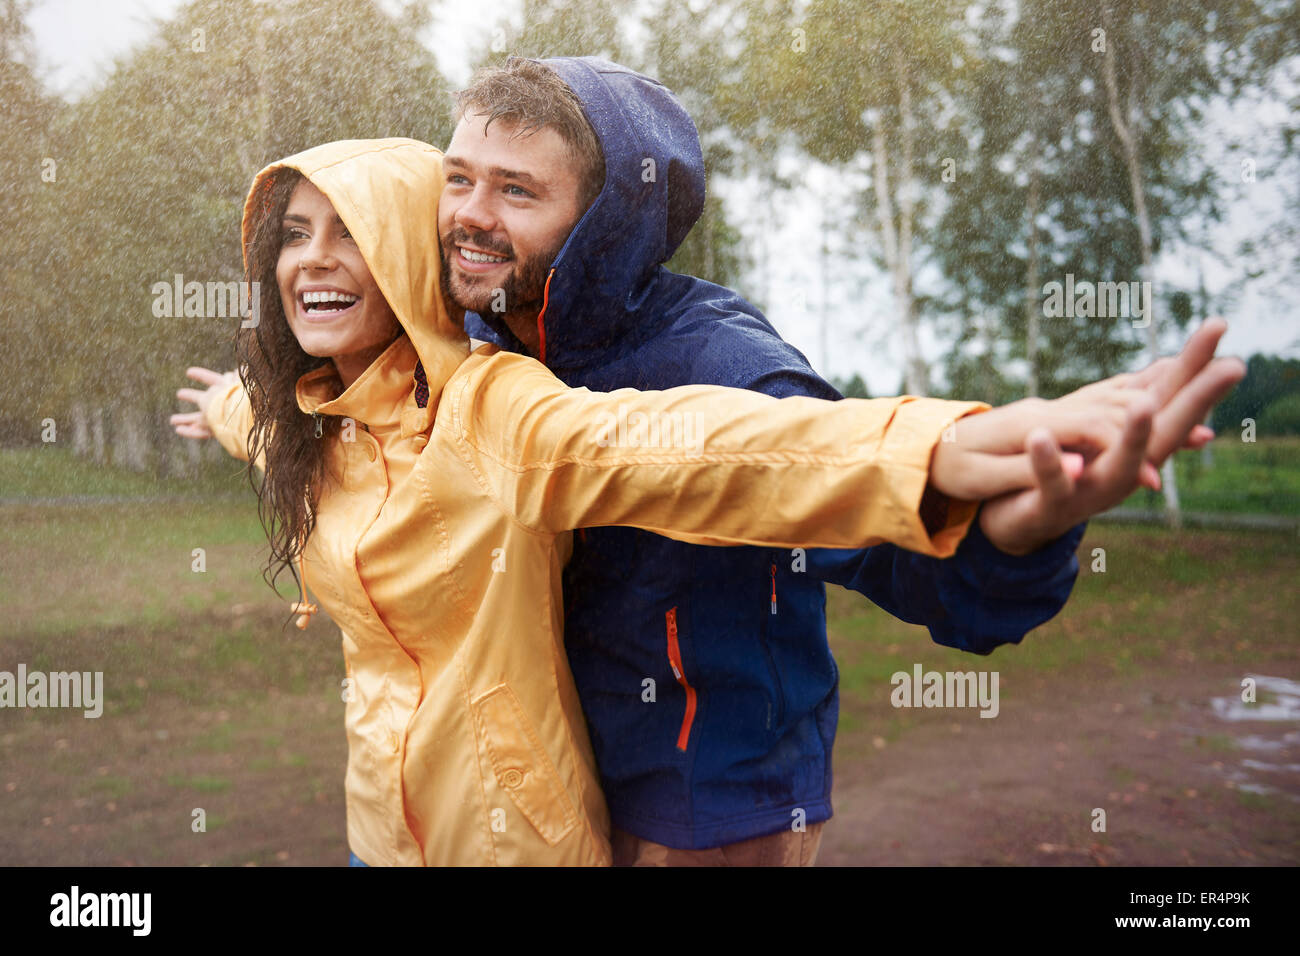 Feeling free in the rain. Debica, Poland Stock Photo